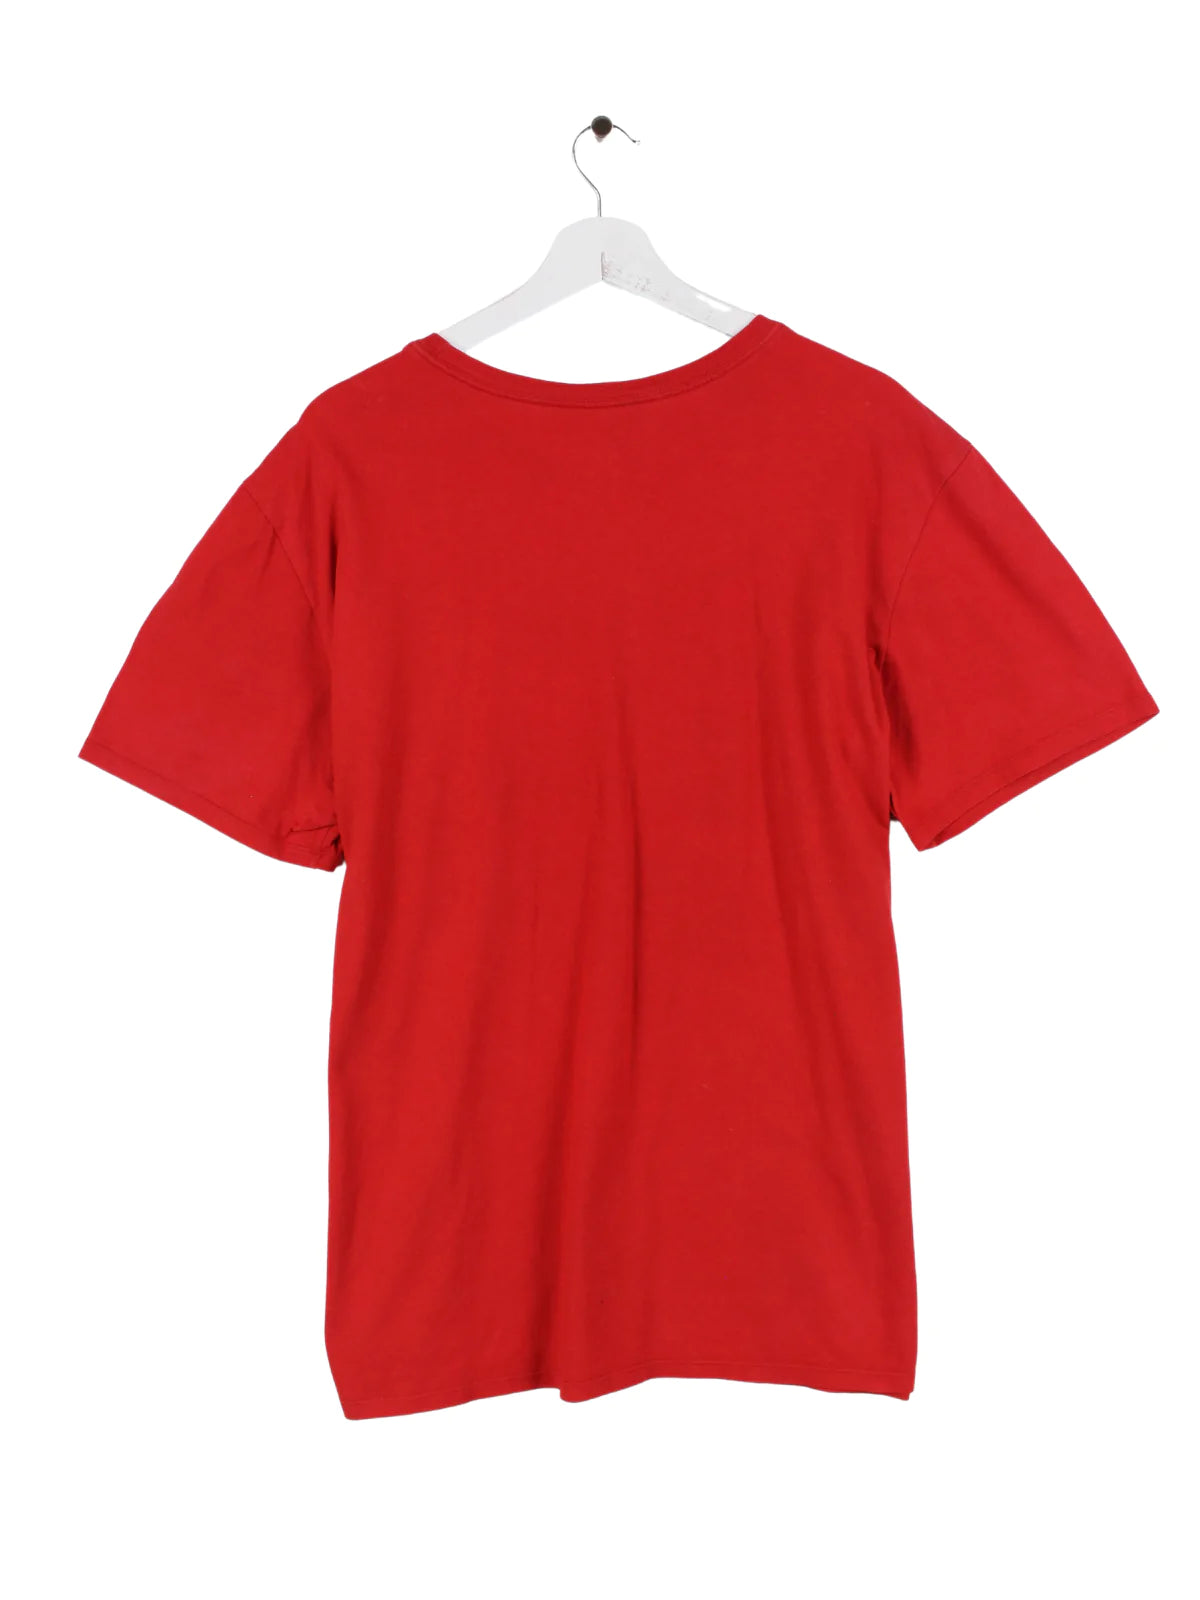 Nike Print T-Shirt Rot XL